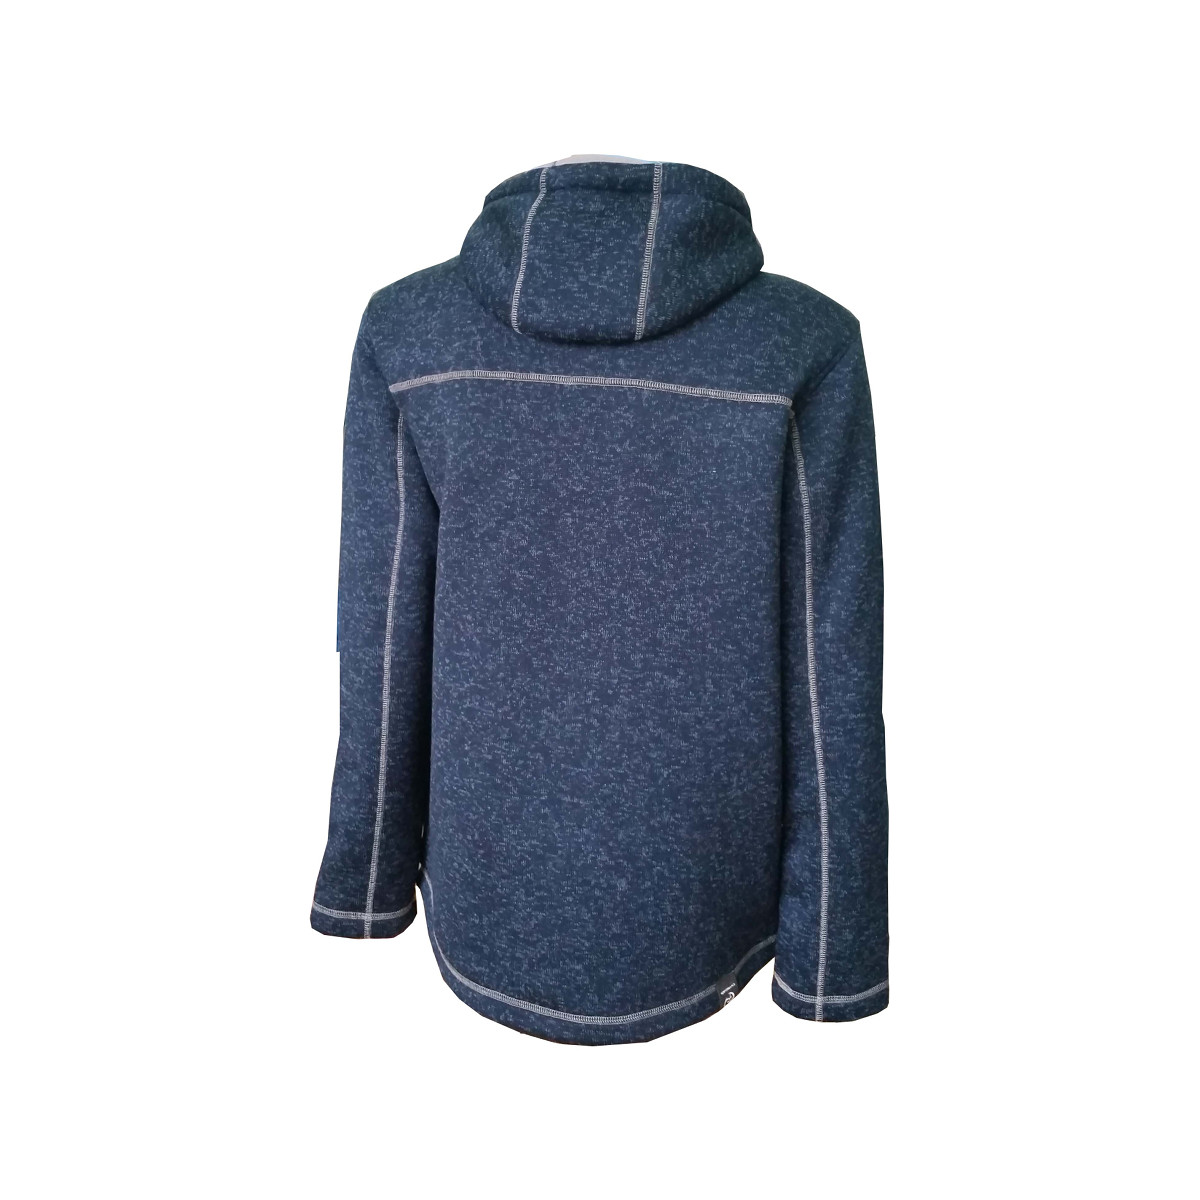 Dry Fashion Pellworm veste en polaire tricotée homme bleu marine chiné, taille M